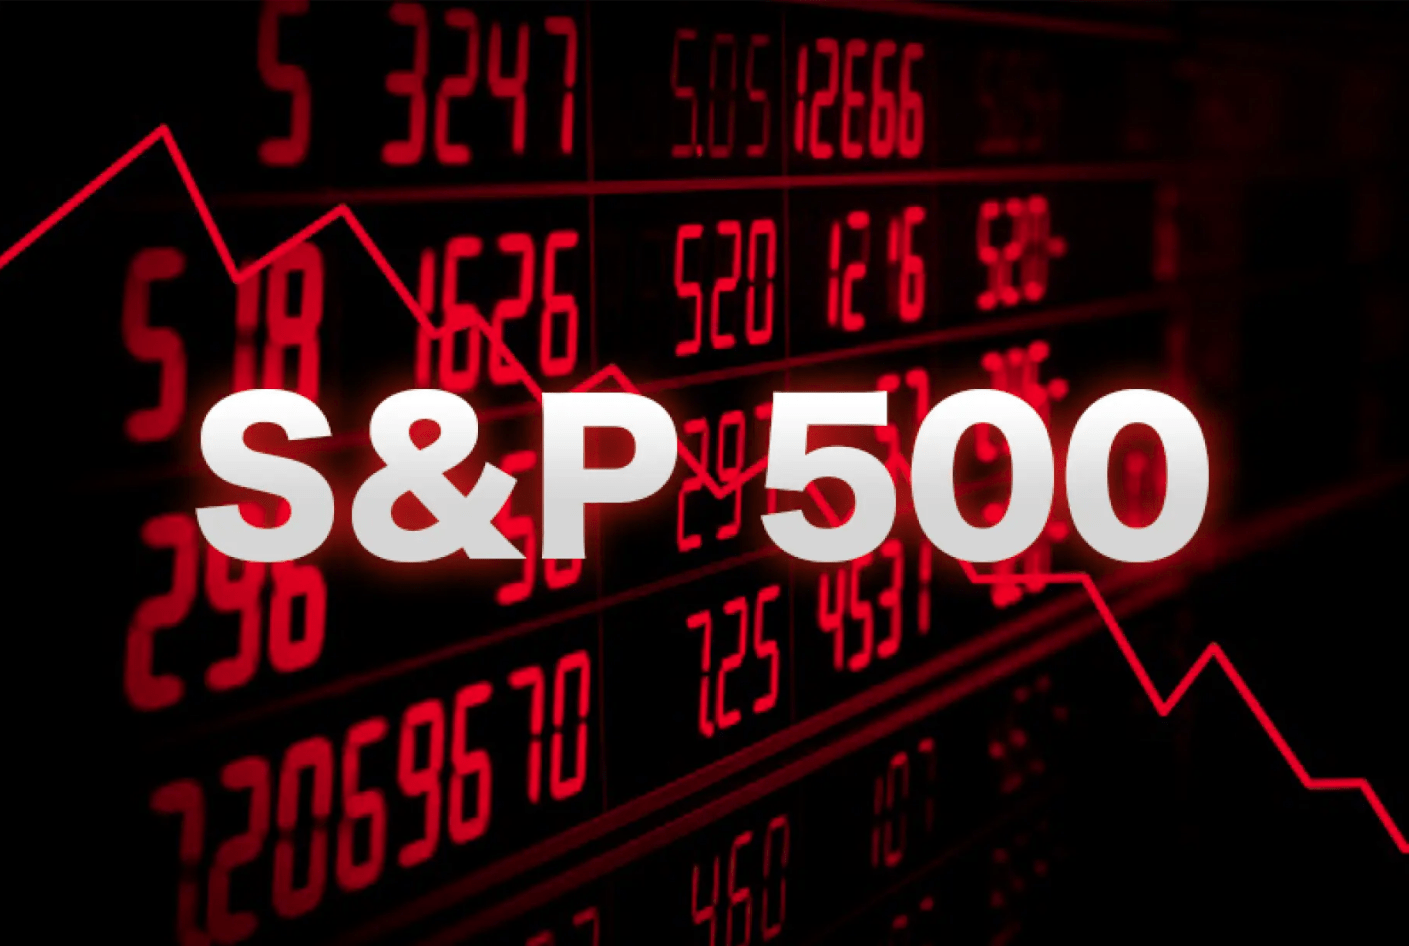 Корреляция биткоина с S&P 500 достигла наивысших показателей за всю историю